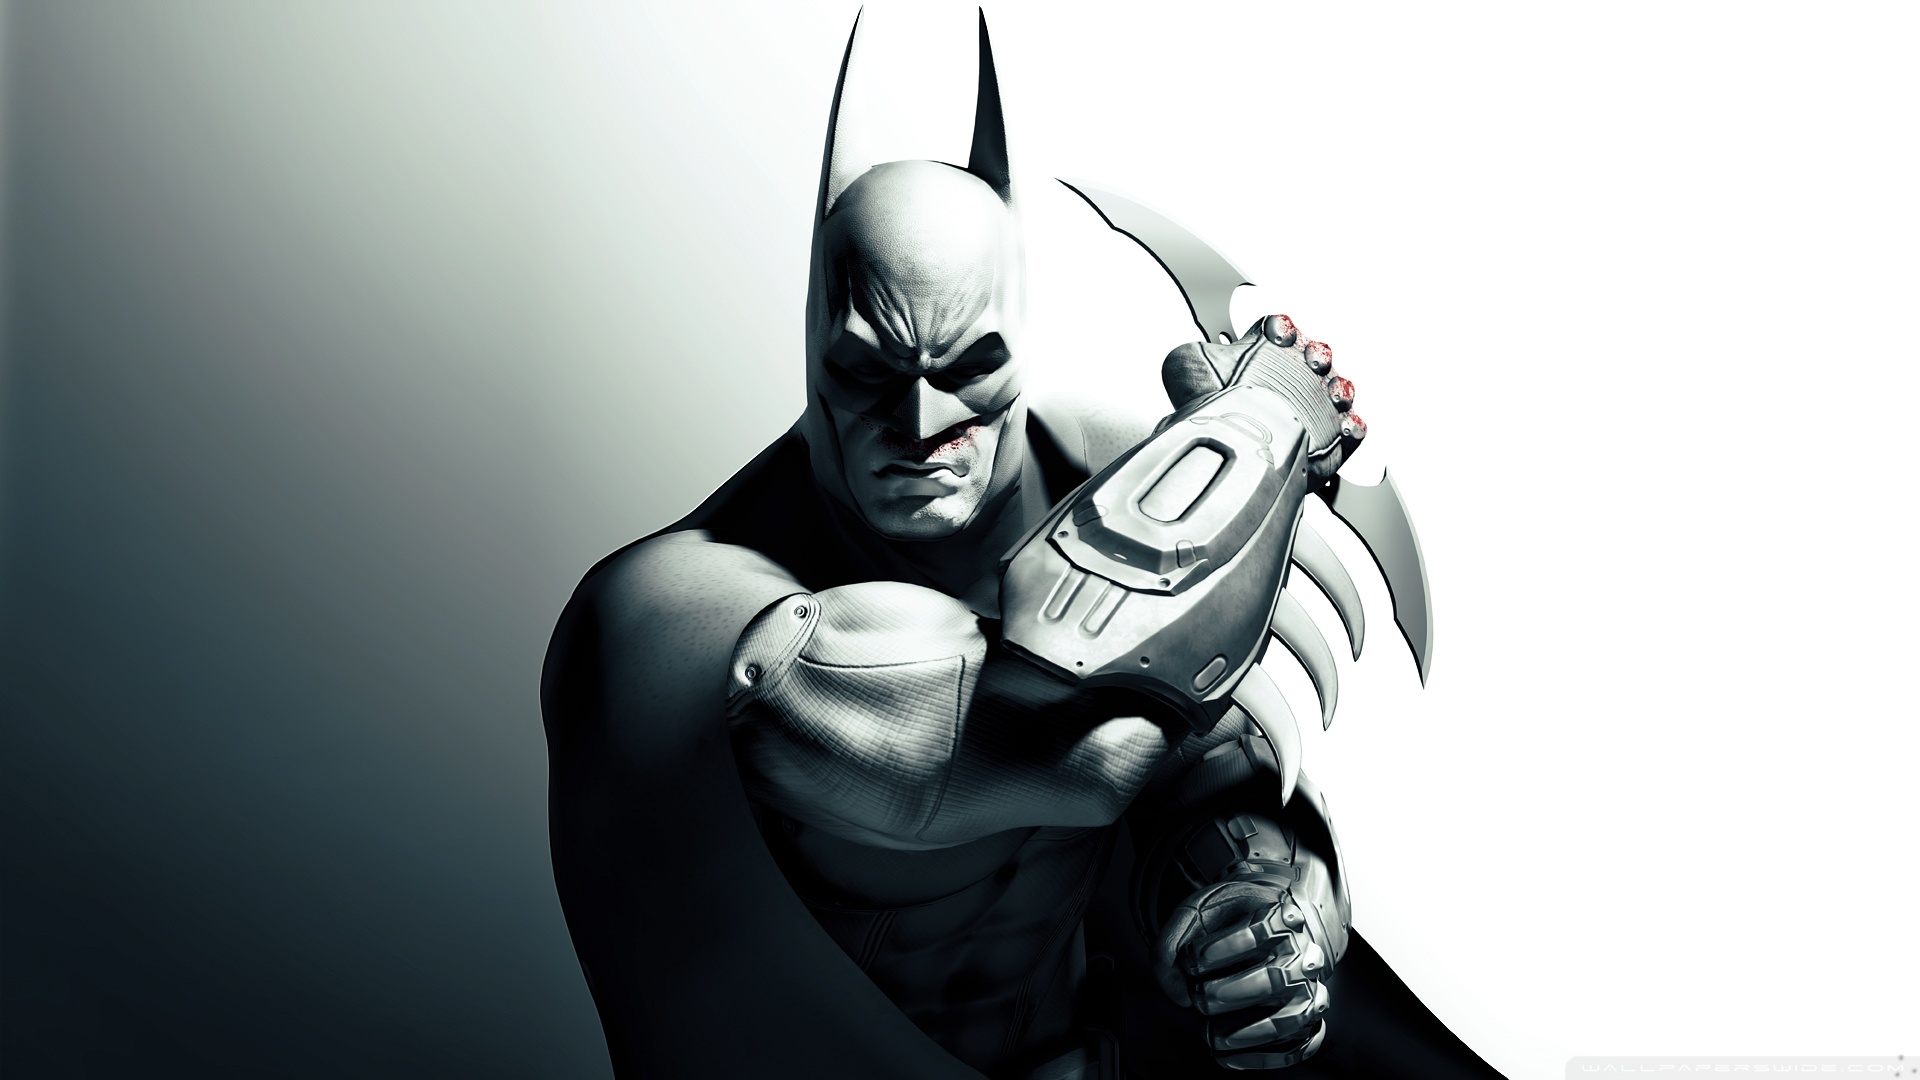 batman fonds d'écran hd pour pc,homme chauve souris,super héros,personnage fictif,illustration,ligue de justice